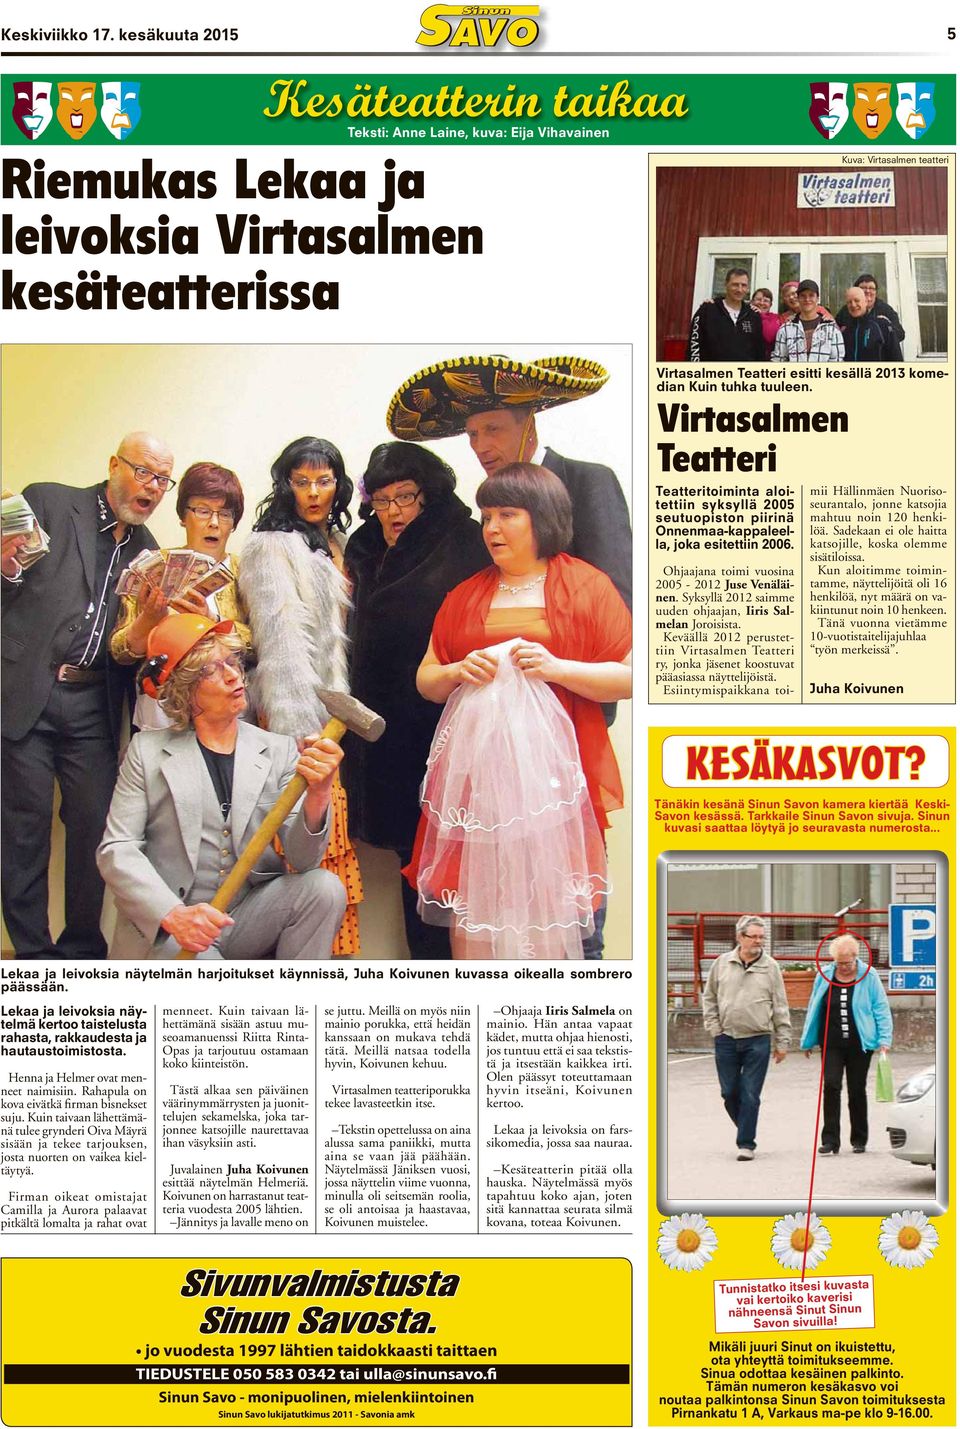 2013 komedian Kuin tuhka tuuleen. Virtasalmen Teatteri Teatteritoiminta aloitettiin syksyllä 2005 seutuopiston piirinä Onnenmaa-kappaleella, joka esitettiin 2006.